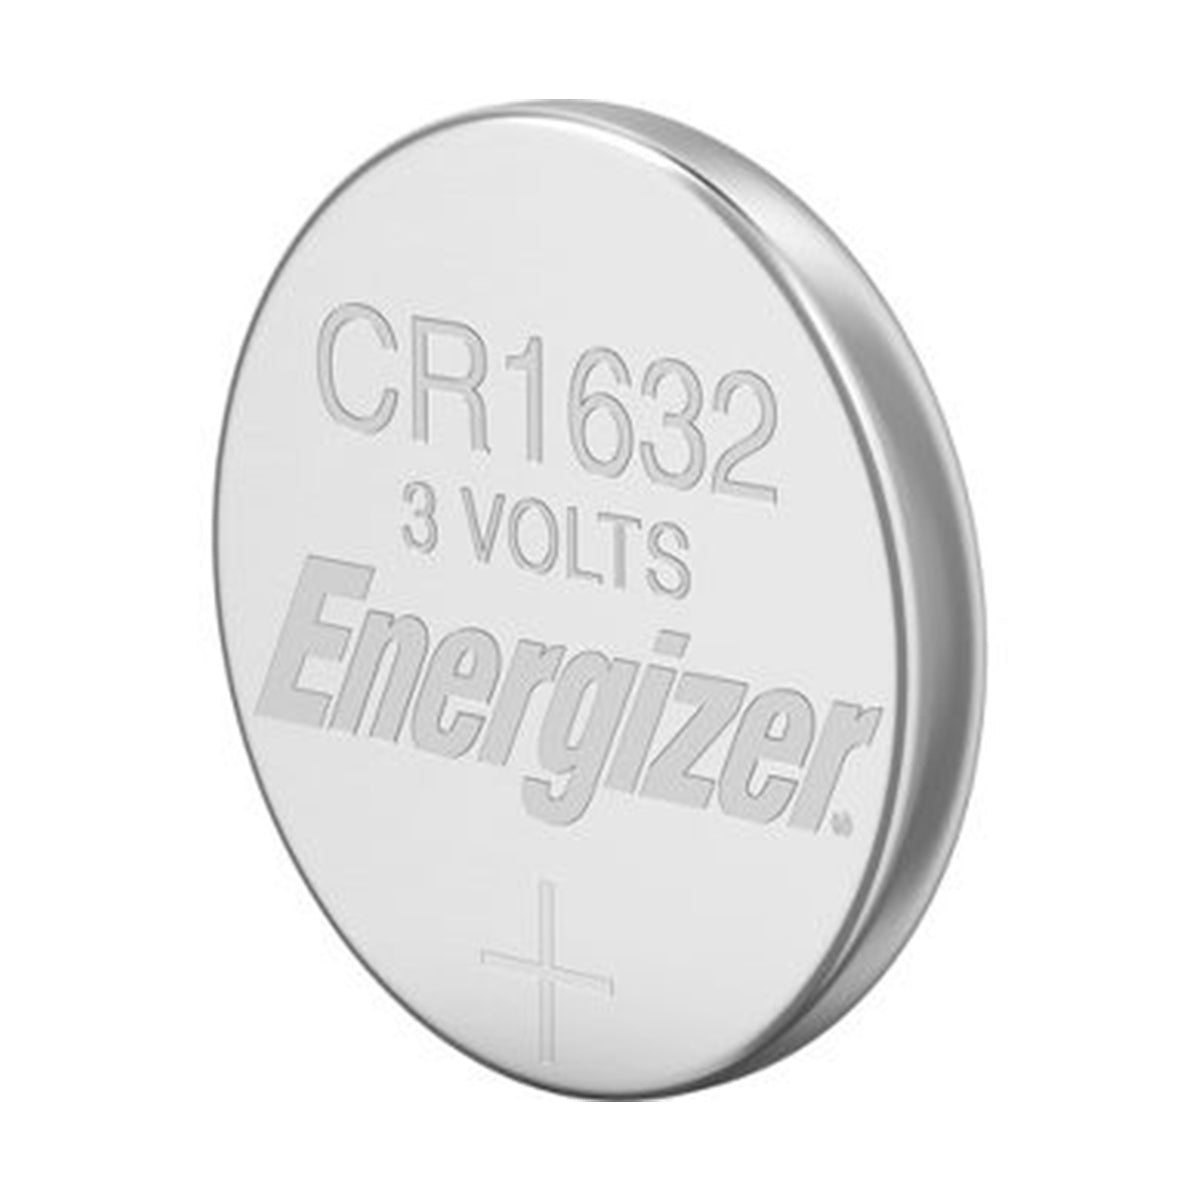 Energizer 3V CR1632 Battery